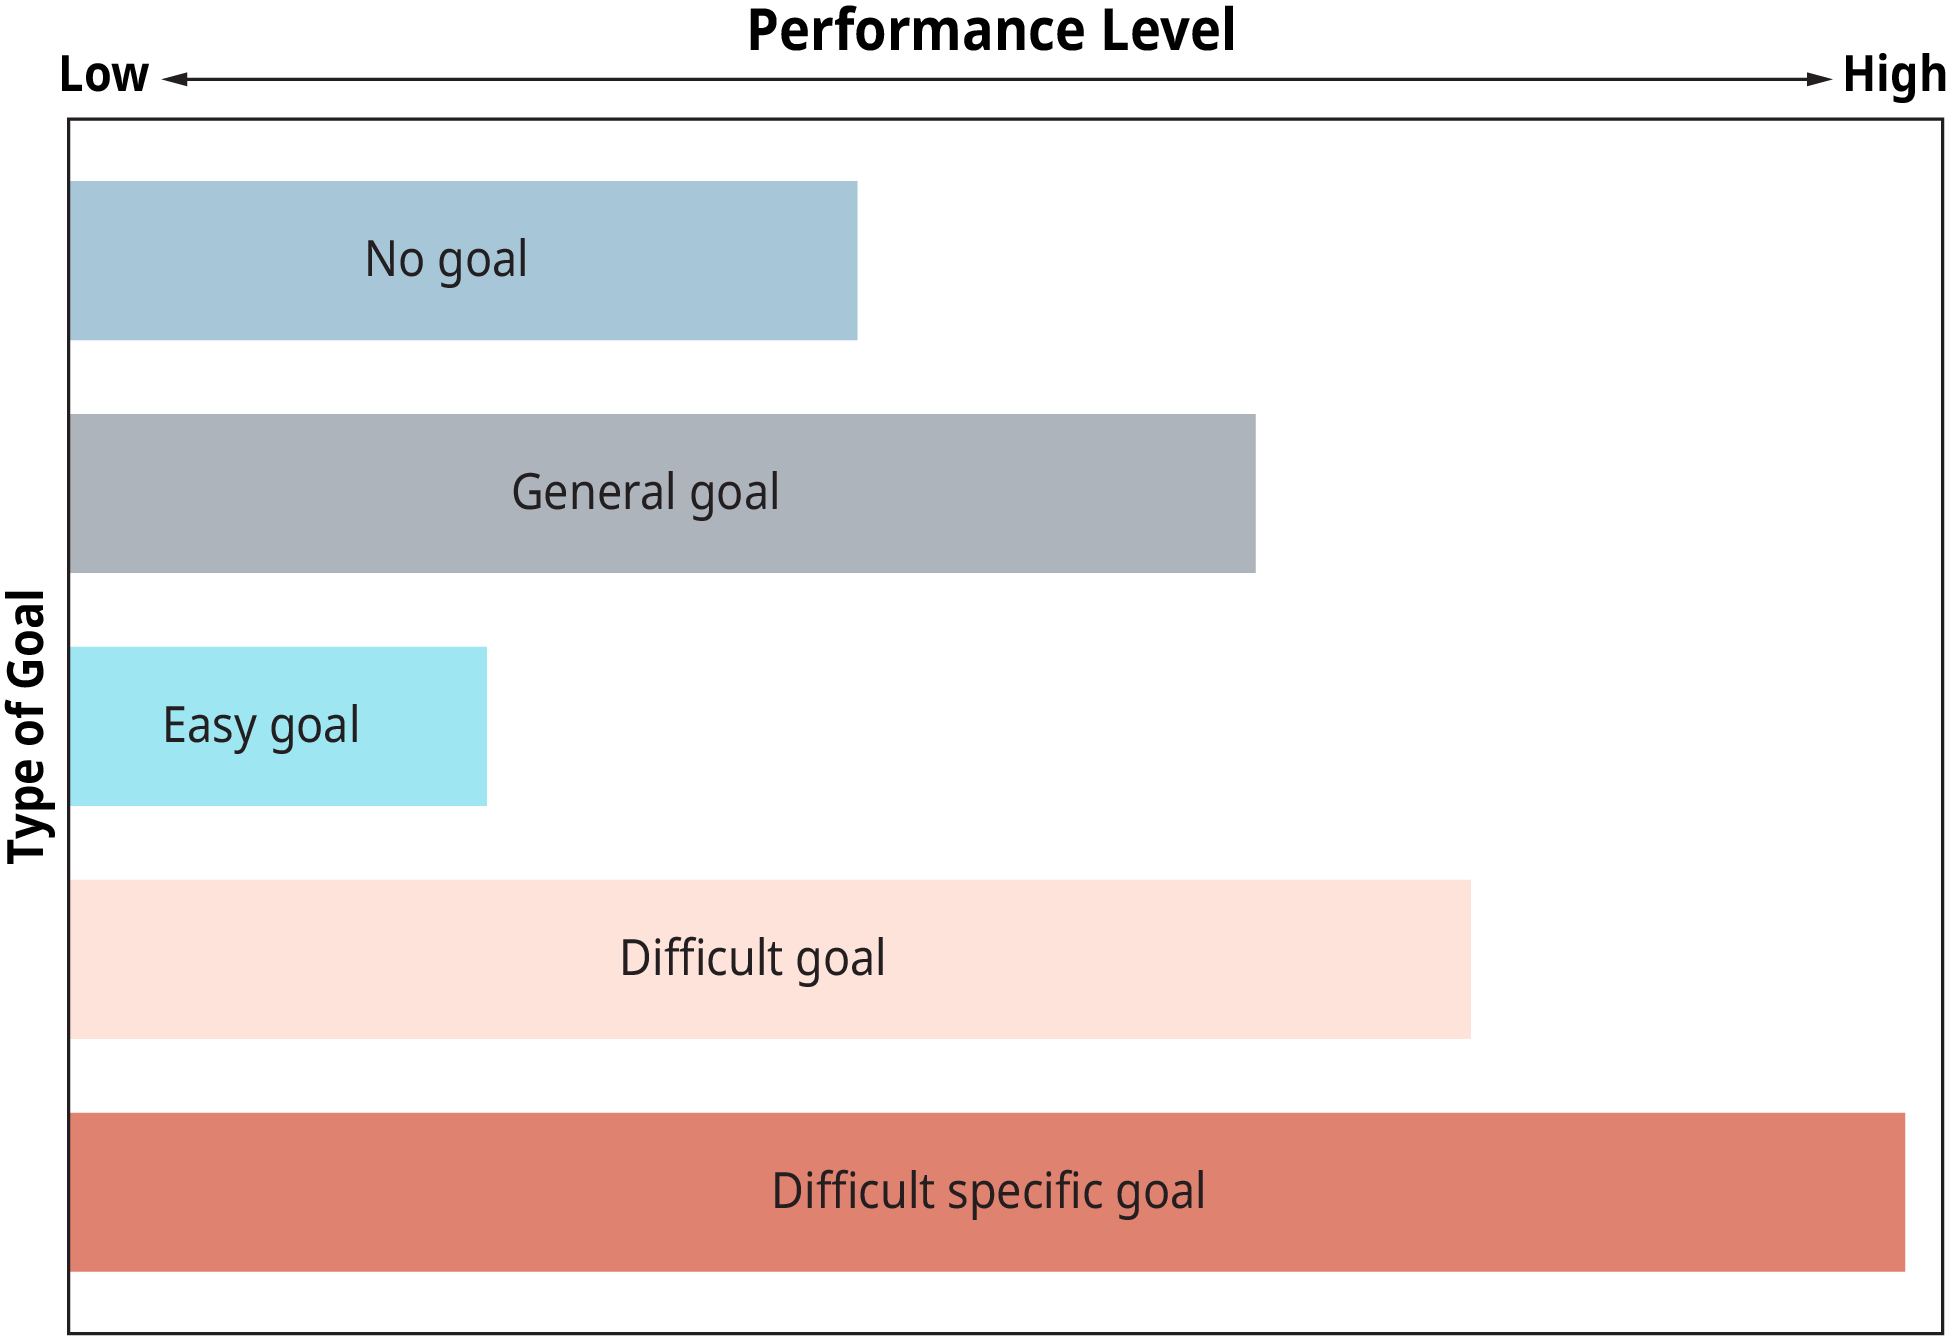 图形表示说明了目标类型对绩效的影响。